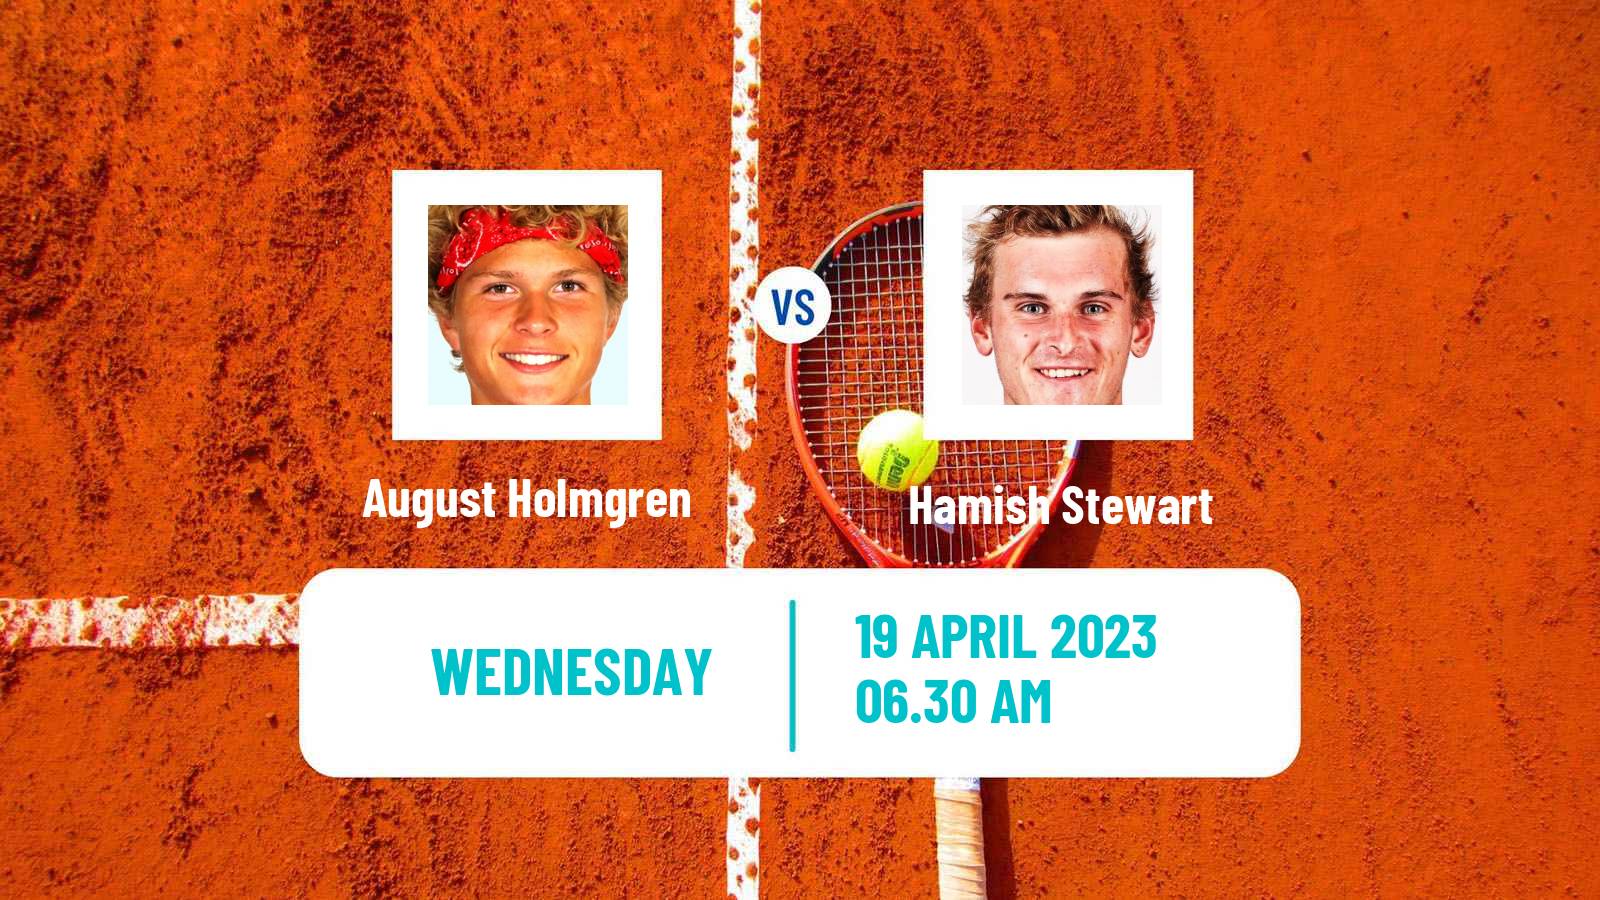 Tennis ITF Tournaments August Holmgren - Hamish Stewart